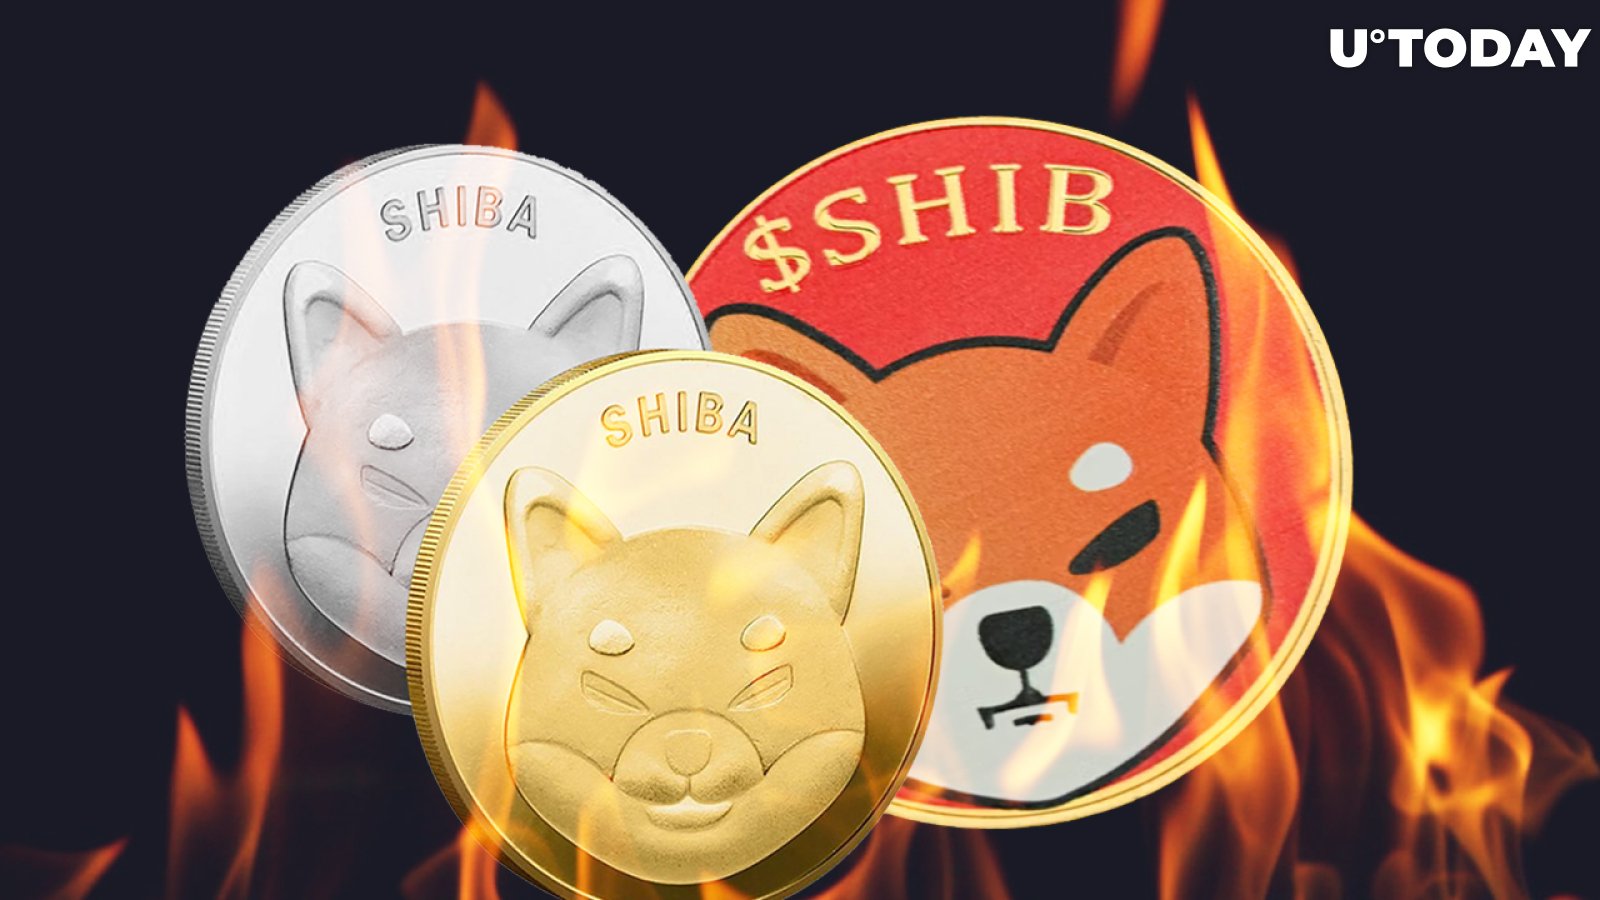 316 Million SHIB Burned in 2 Days, While SHIB Surpasses FTT on Top 10 Holdings List